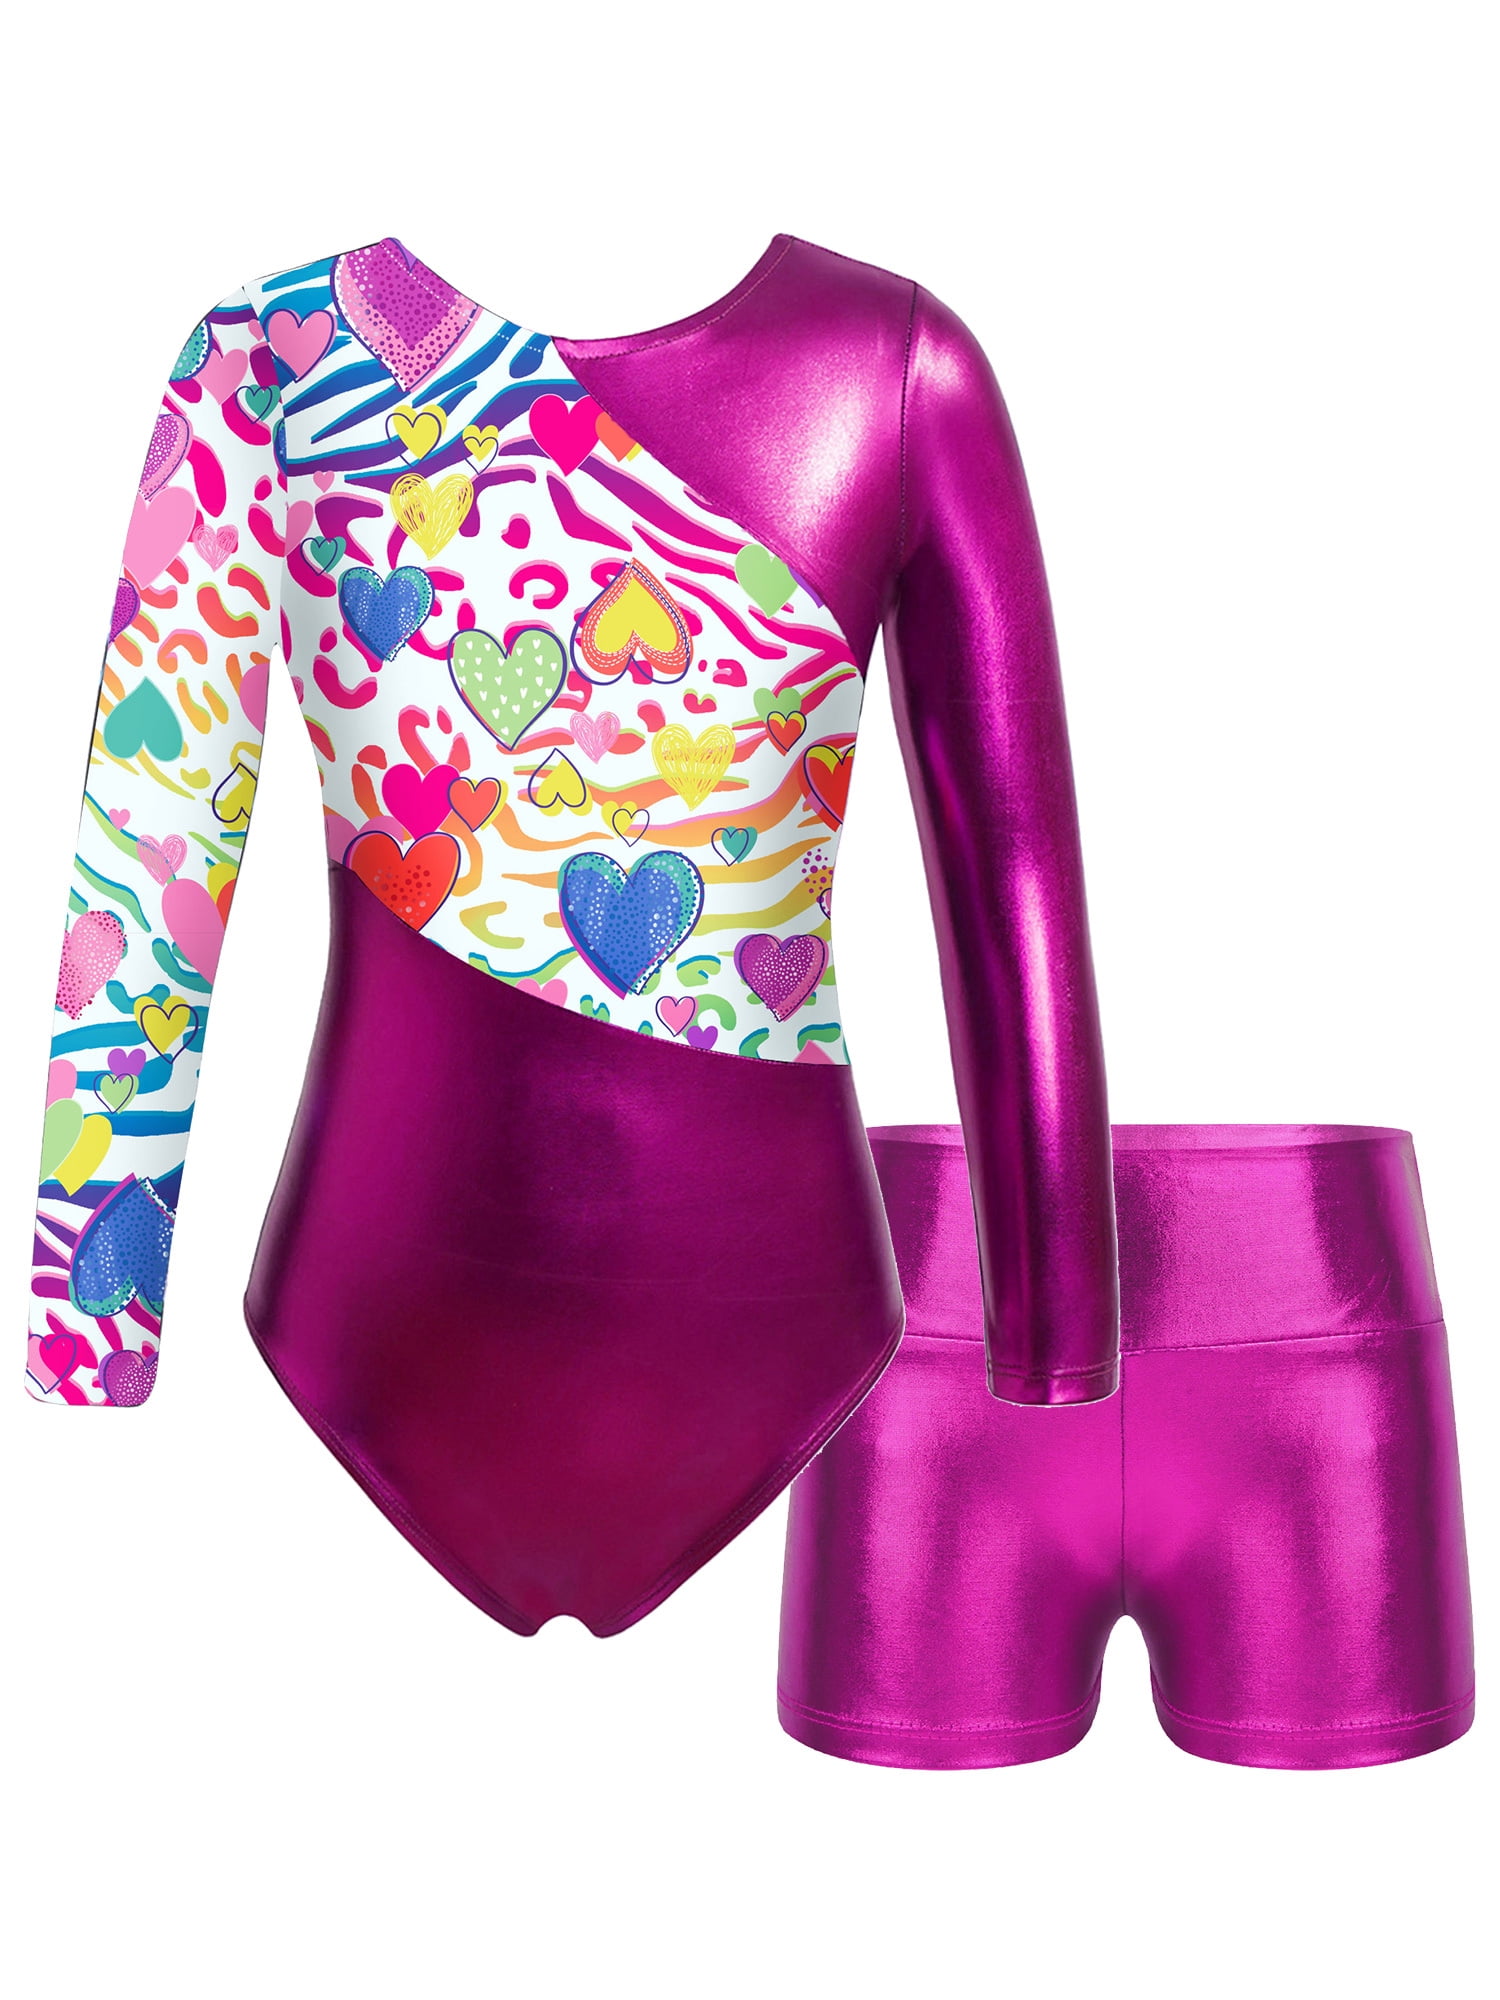 YEAHDOR Kids Girls 2 Piece Dance Gymnastics Outfit Suit Metallic